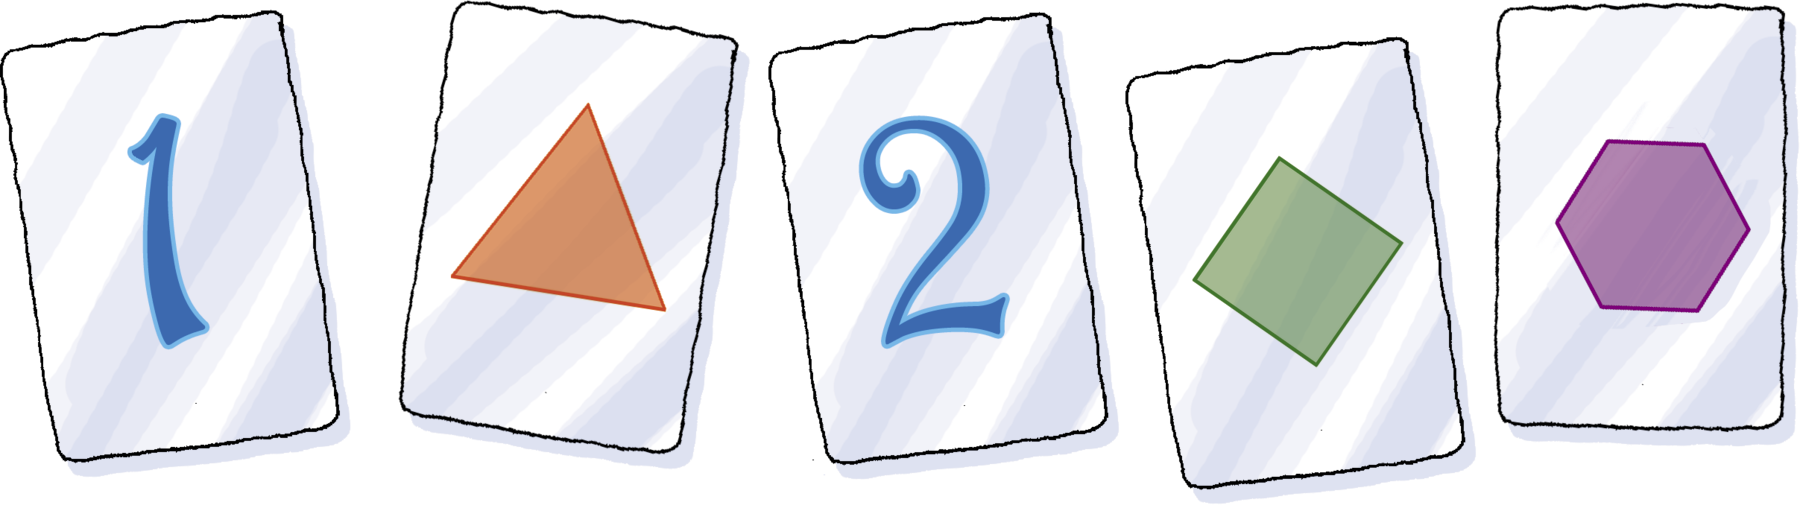 Ilustração.  Cinco cartões contendo número ou figura.  Primeiro cartão: 1 Segundo cartão: triângulo laranja Terceiro cartão: 2 Quarto cartão:  losango verde, Quinto cartão: hexágono roxo.